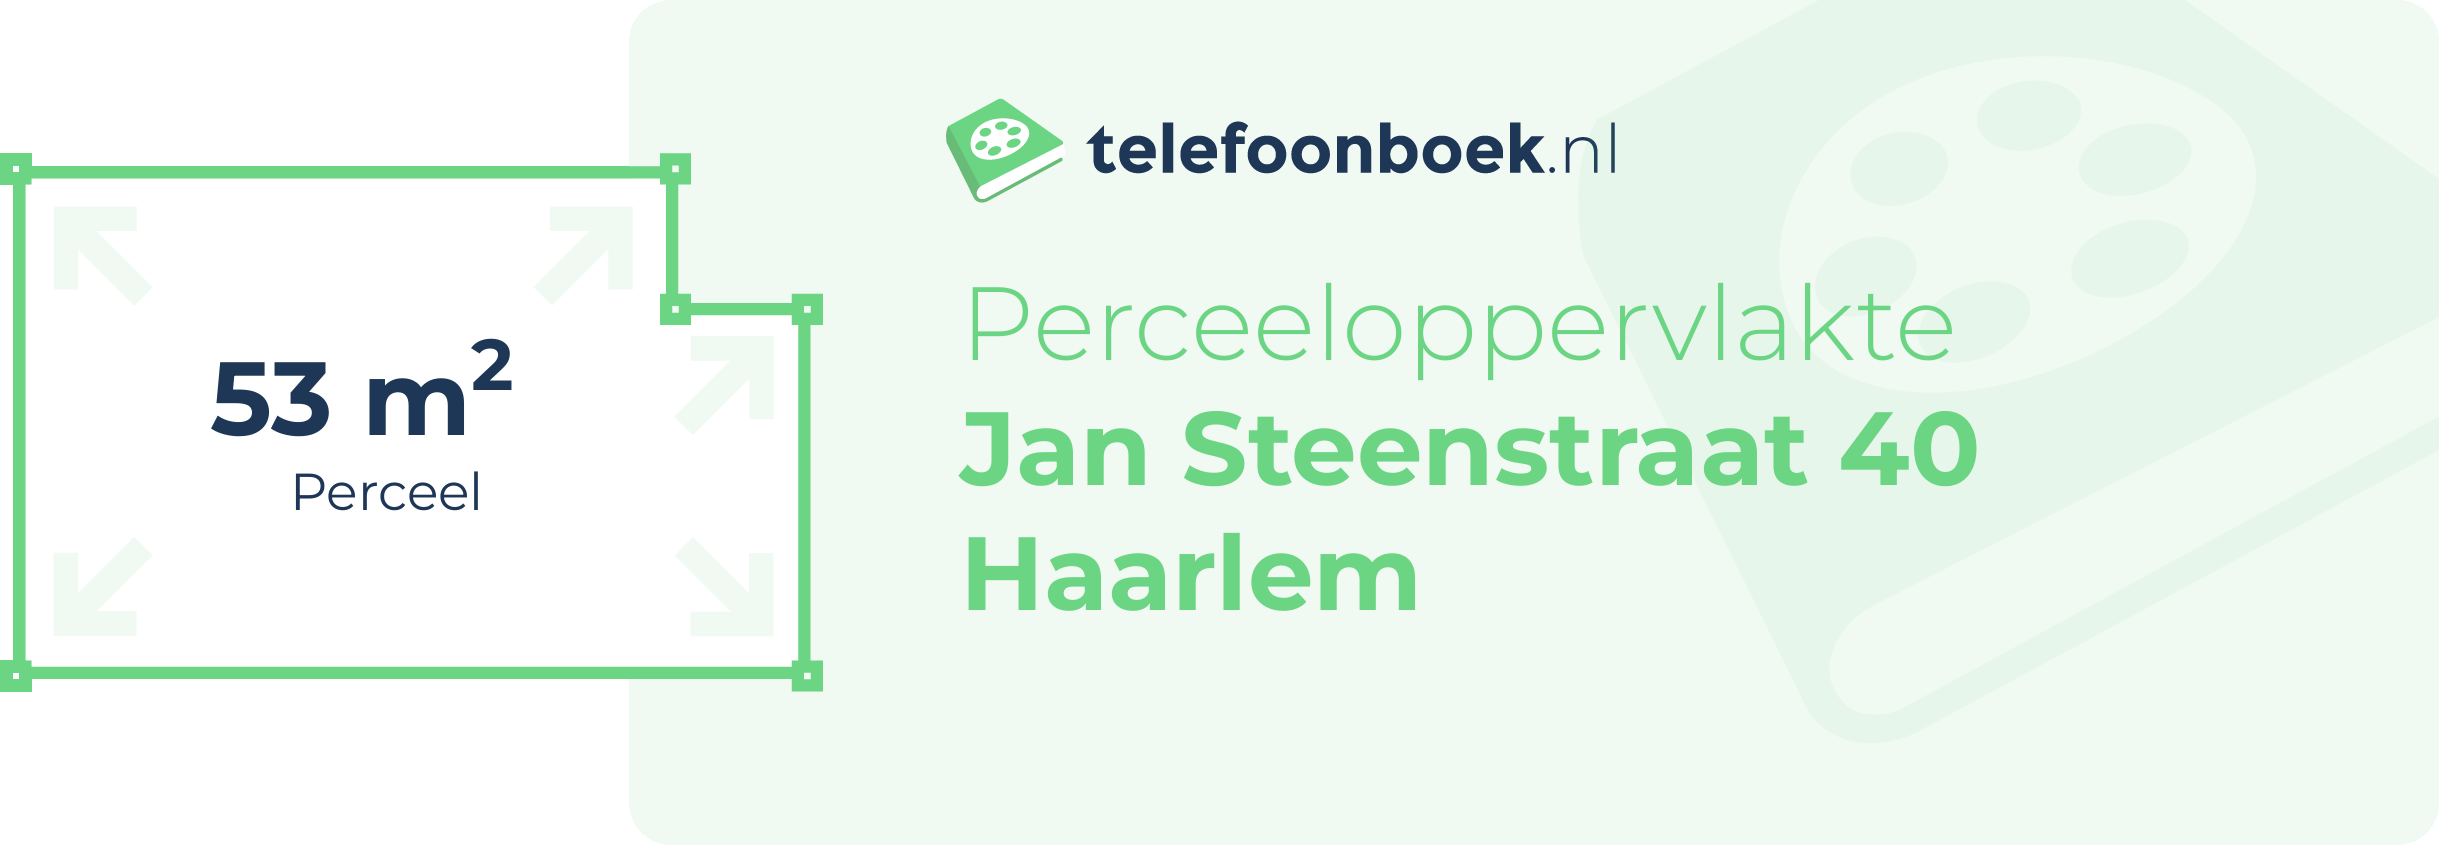 Perceeloppervlakte Jan Steenstraat 40 Haarlem